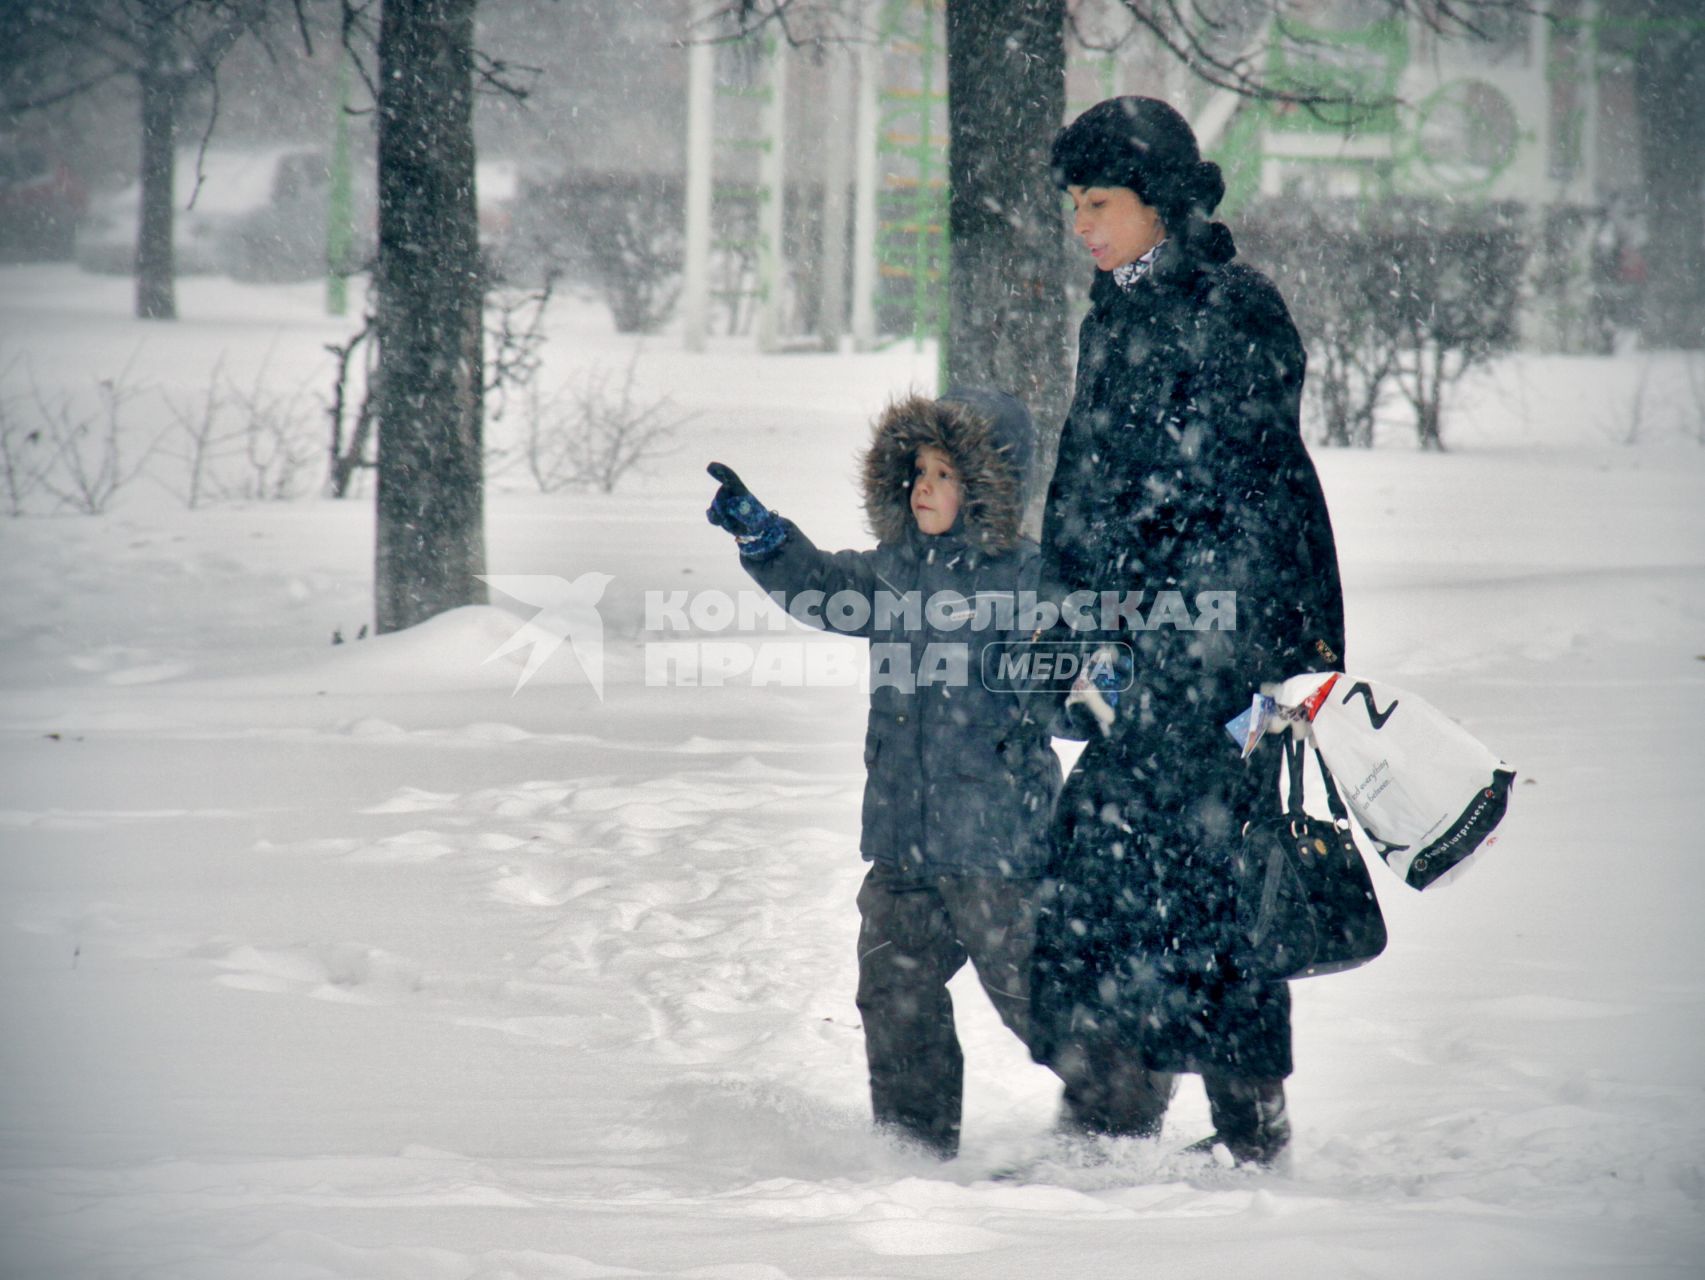 Во время снегопада женщина с ребенком идут по улице.